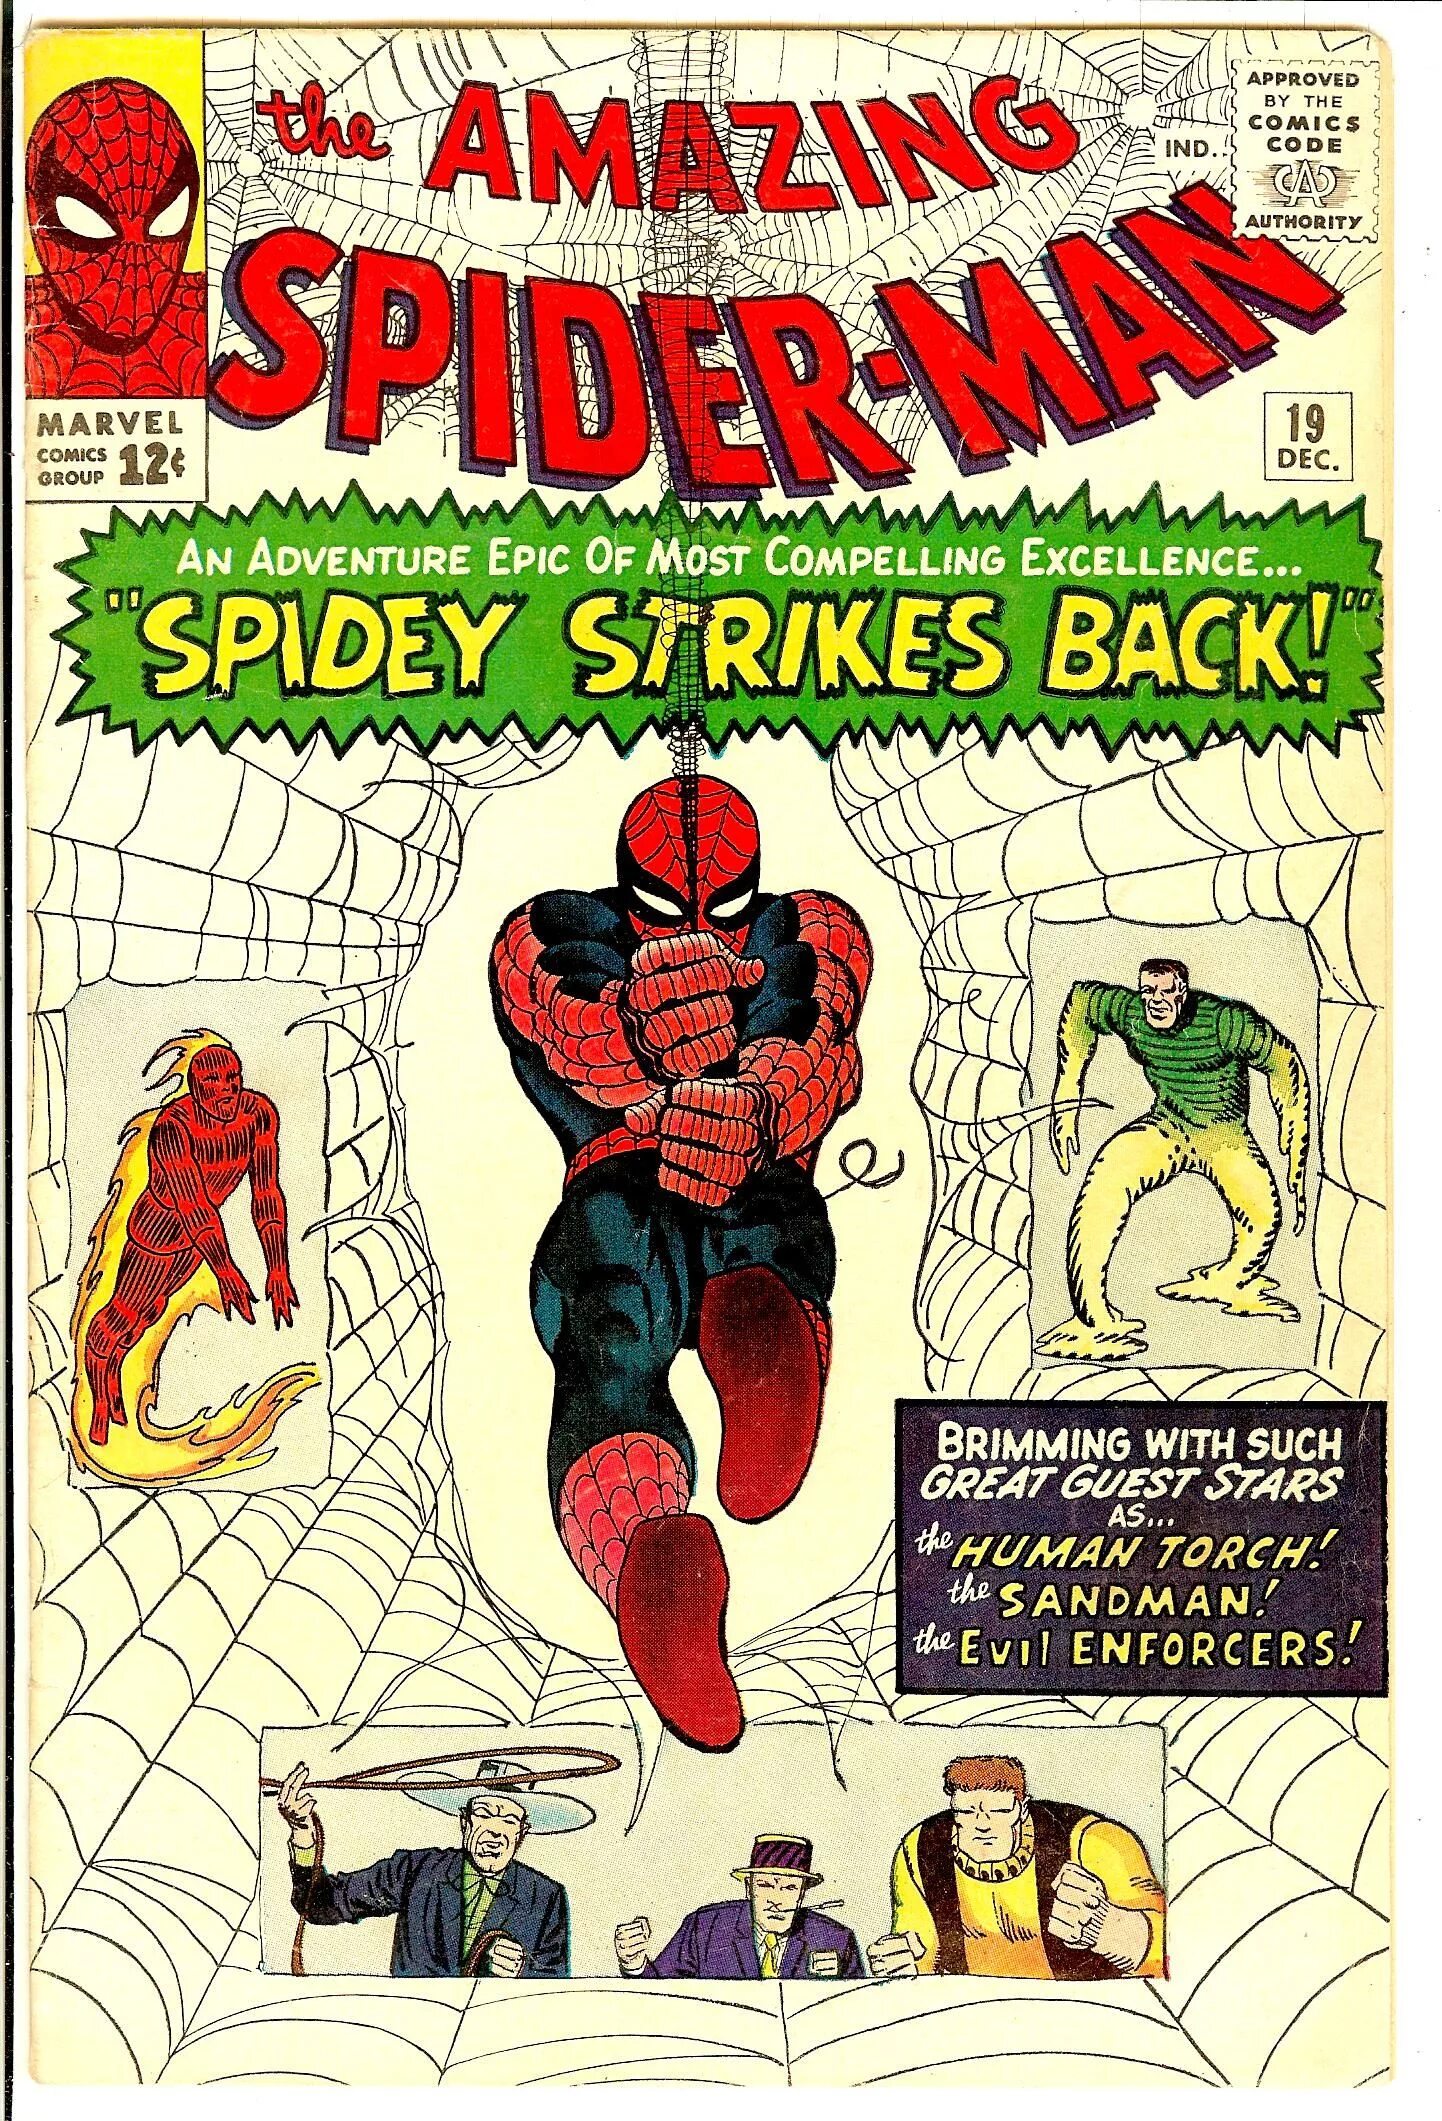 Amazing Spider man 1 комикс. Первый комикс человек паук 1963. Первый комикс про человека паука. Комикс Марвел удивительный человек паук. Читать комиксы удивительный